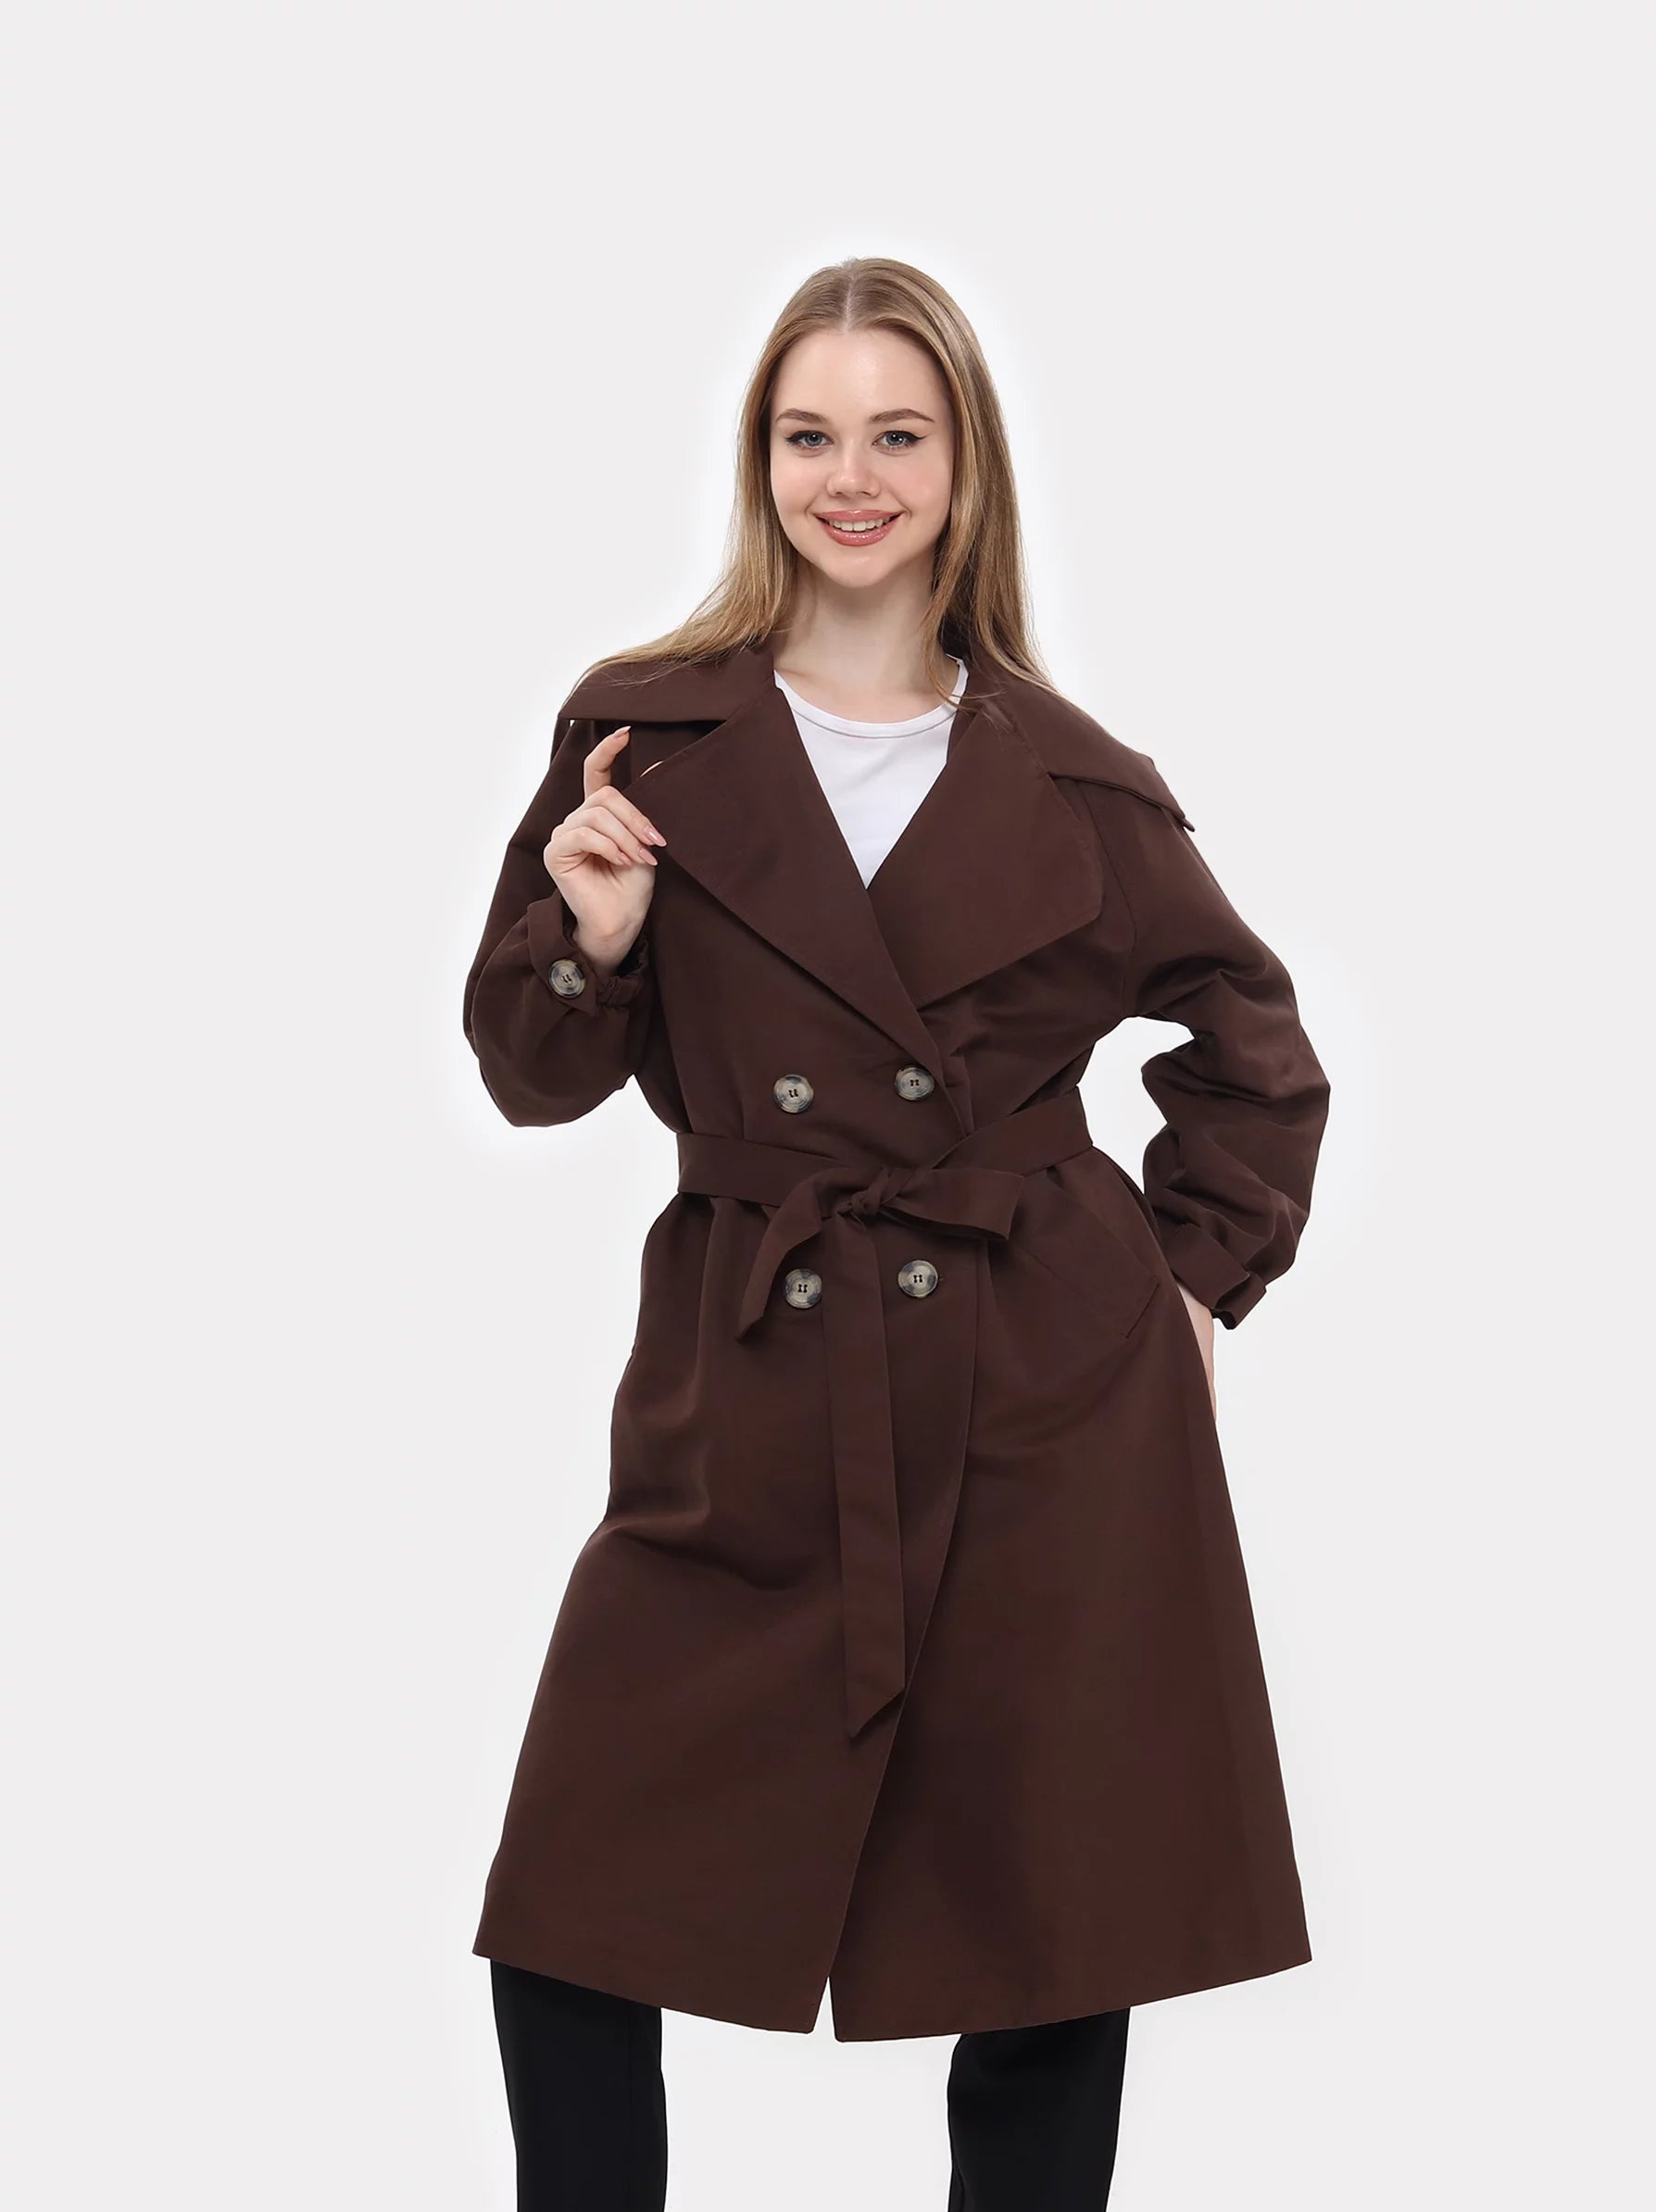 Women's Trench Coats